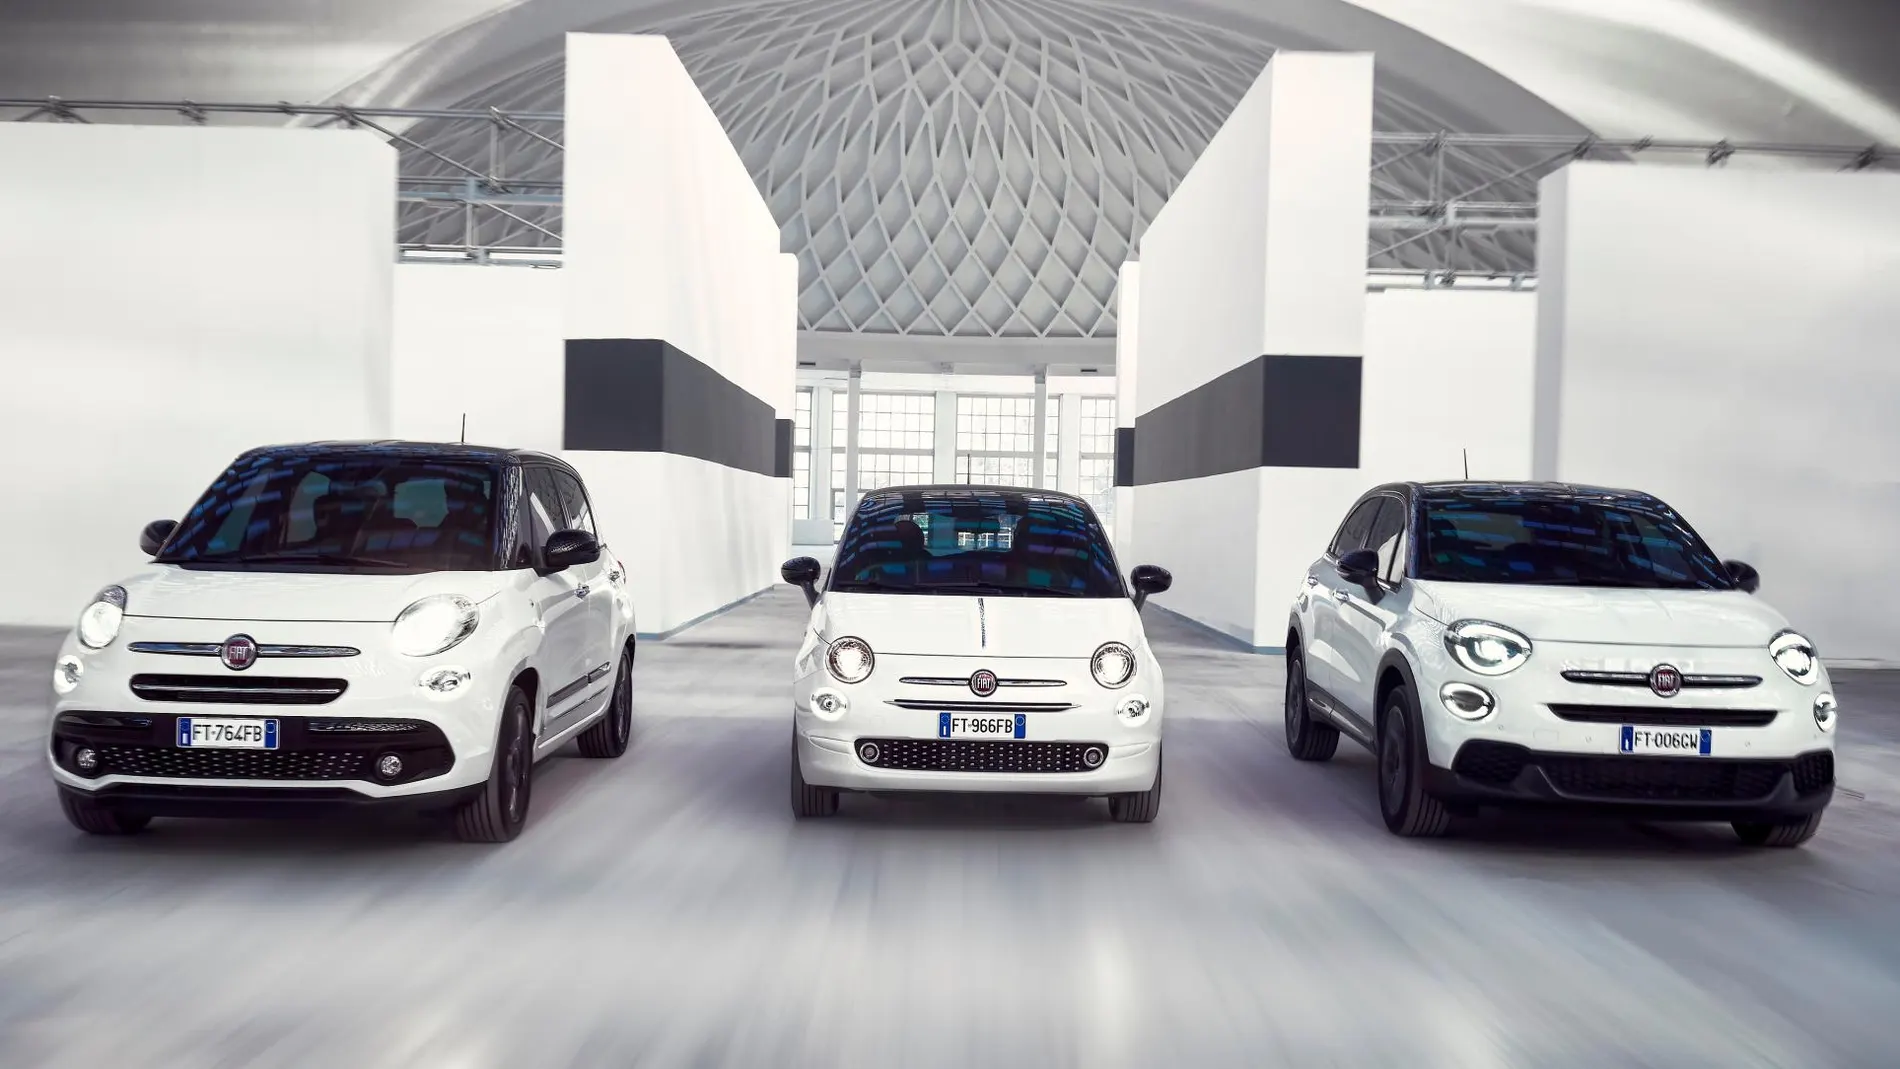 La familia Fiat 500 crece en tamaño y prestaciones